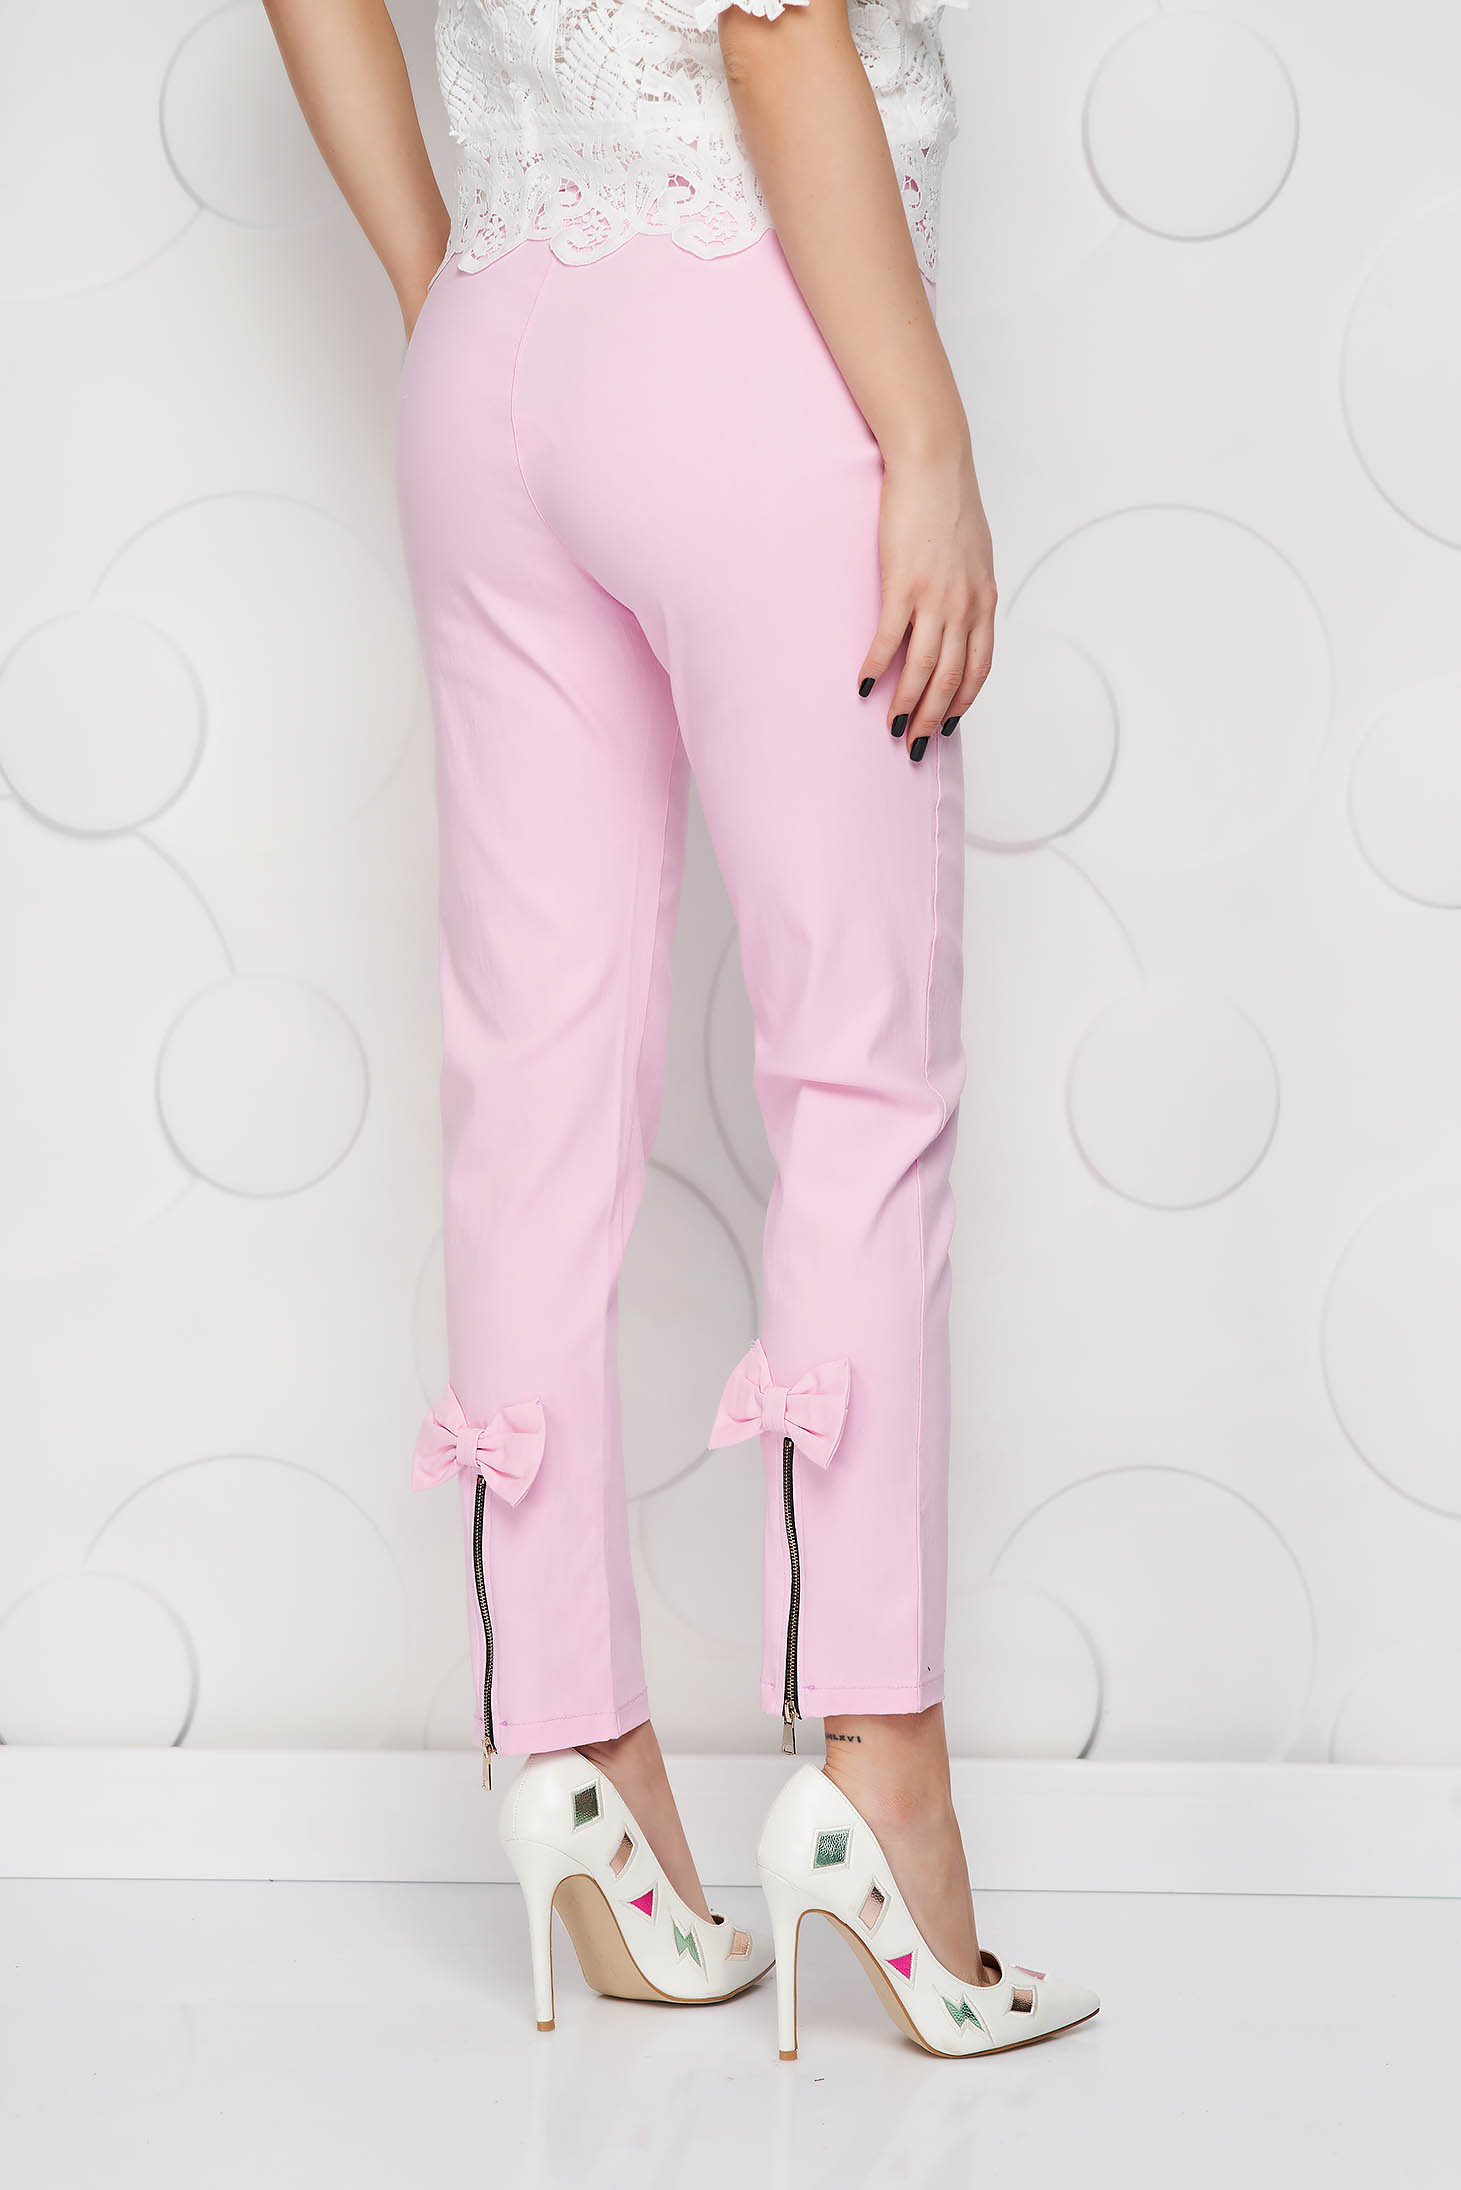 Pantaloni SunShine roz din material elastic conici cu talie inalta